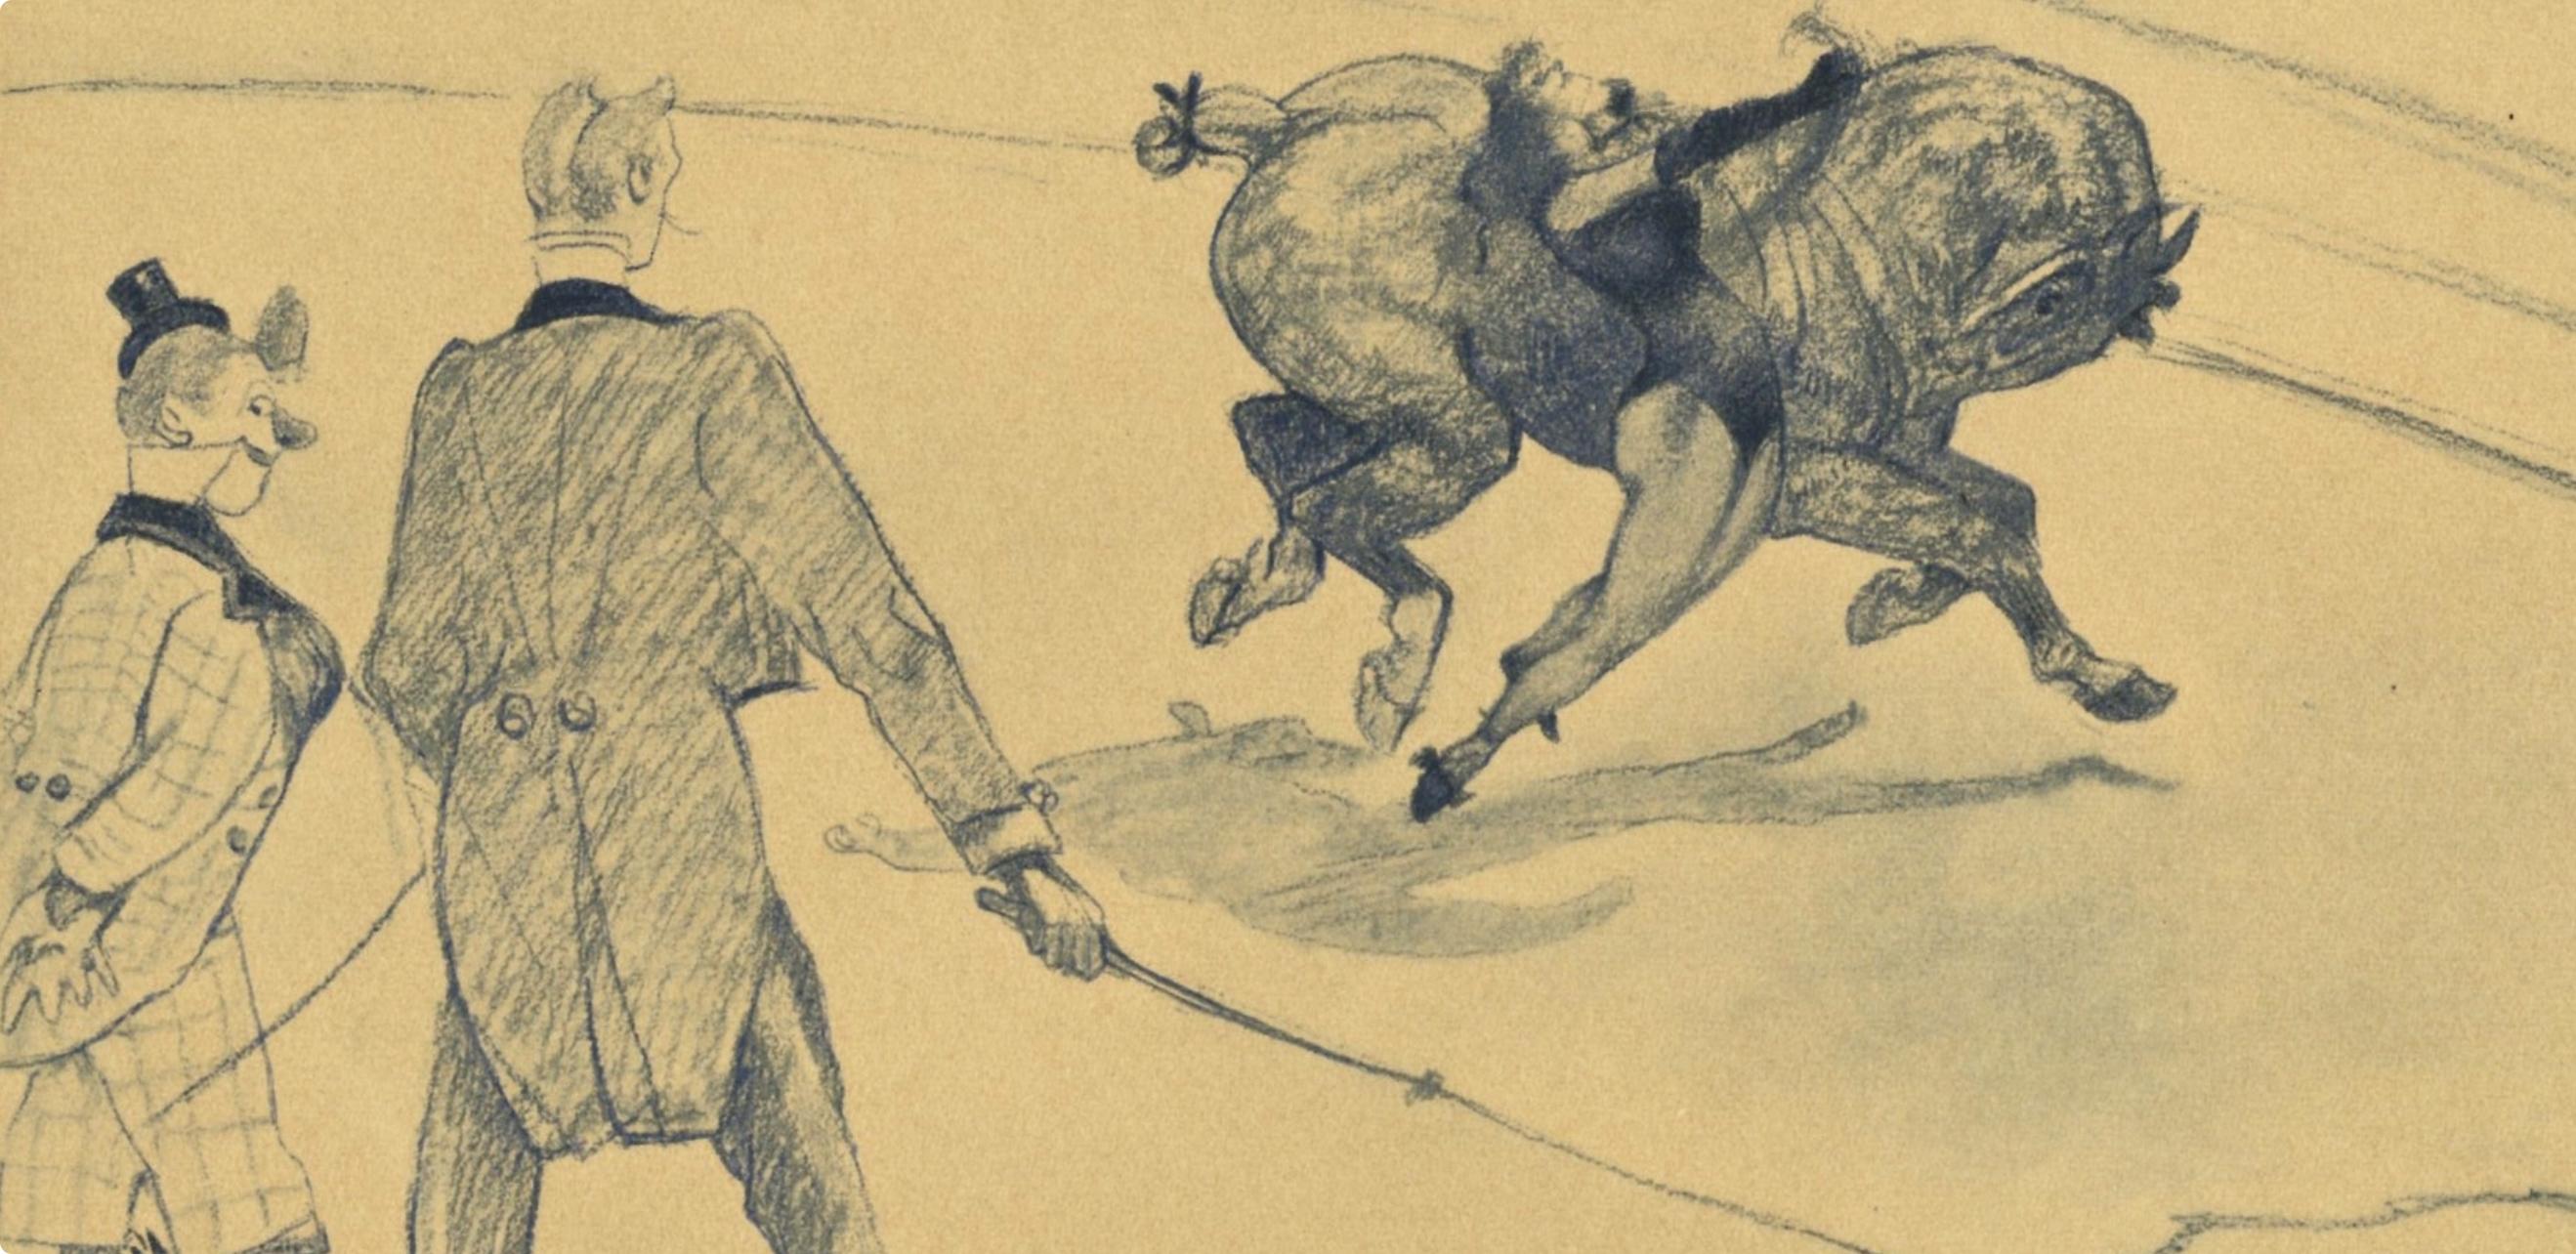 Toulouse-Lautrec, Voltige, le cirque de Toulouse-Lautrec (après) - Print de Henri de Toulouse-Lautrec